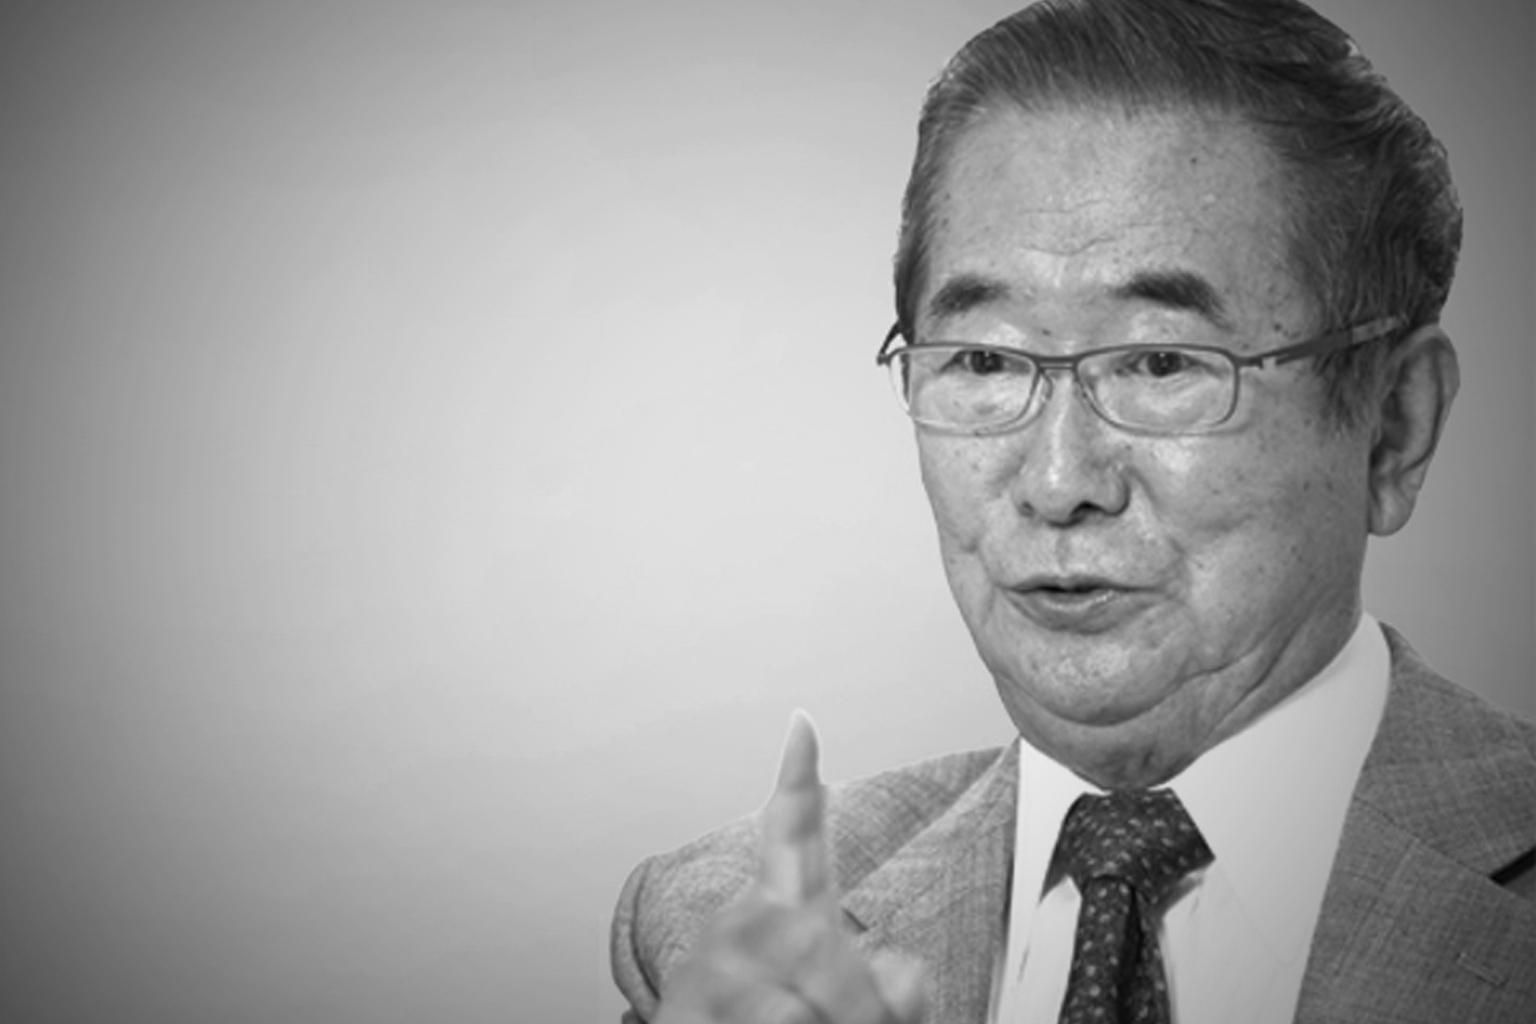 News Roundup: Former Tokyo Governor Shintaro Ishihara Dies At 89